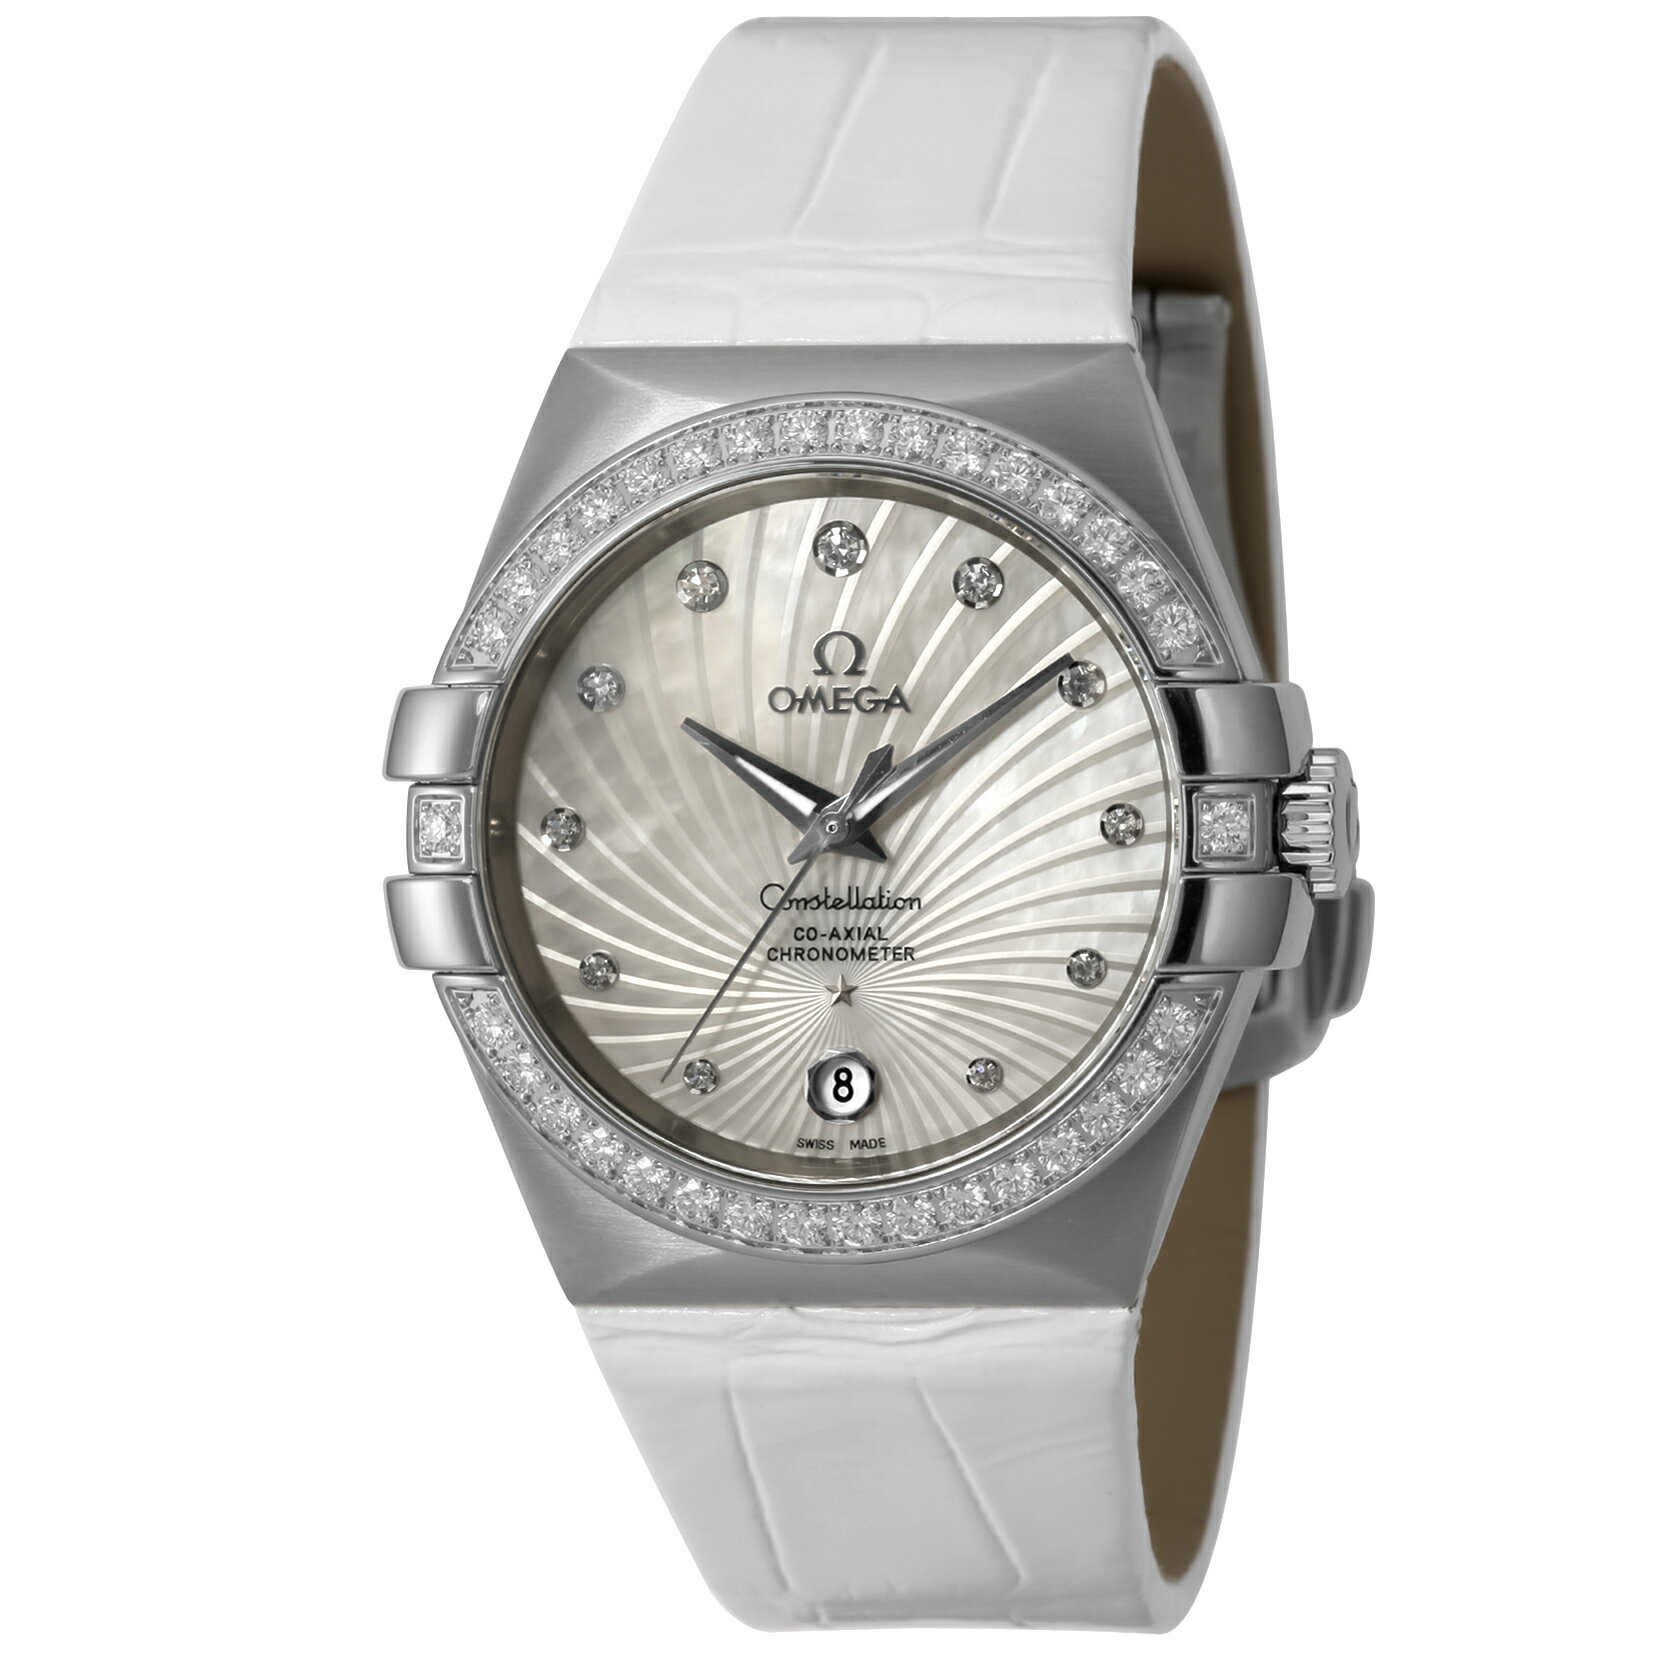 オメガ コンステレーション 35mm 自動巻き 腕時計 レディース ダイヤモンド OMEGA 123.18.35.20.55.001 アナログ ホワイトシェル ホワイト 白 スイス製 プレゼント ギフト